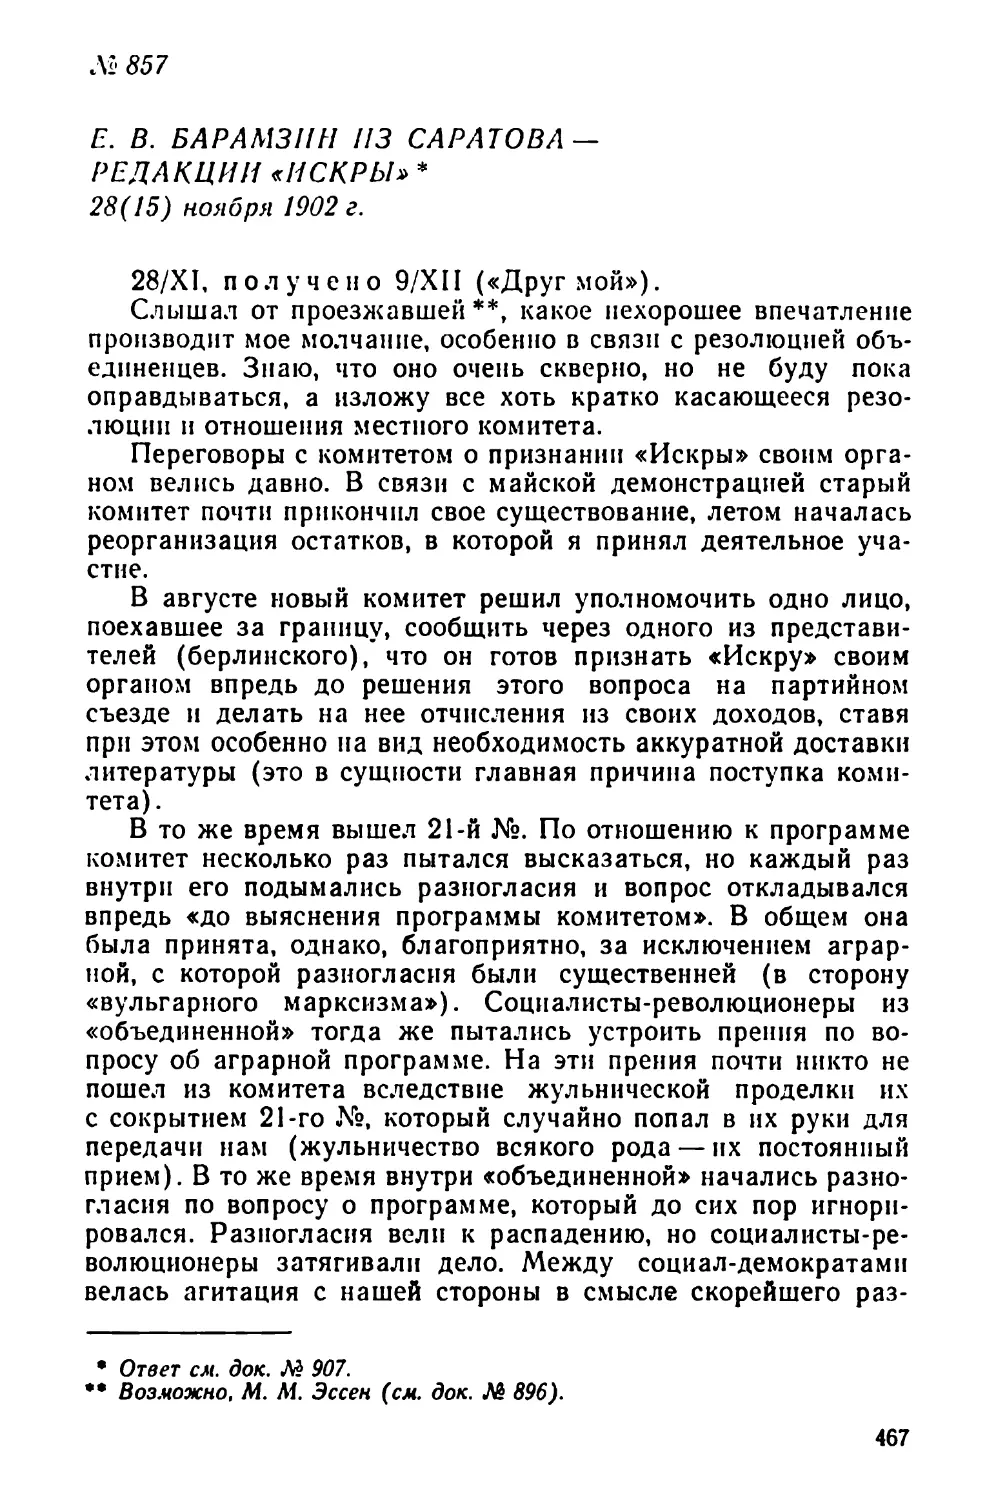 № 857 Е. В. Карамзин из Саратова — редакции «Искры». 28 ноября